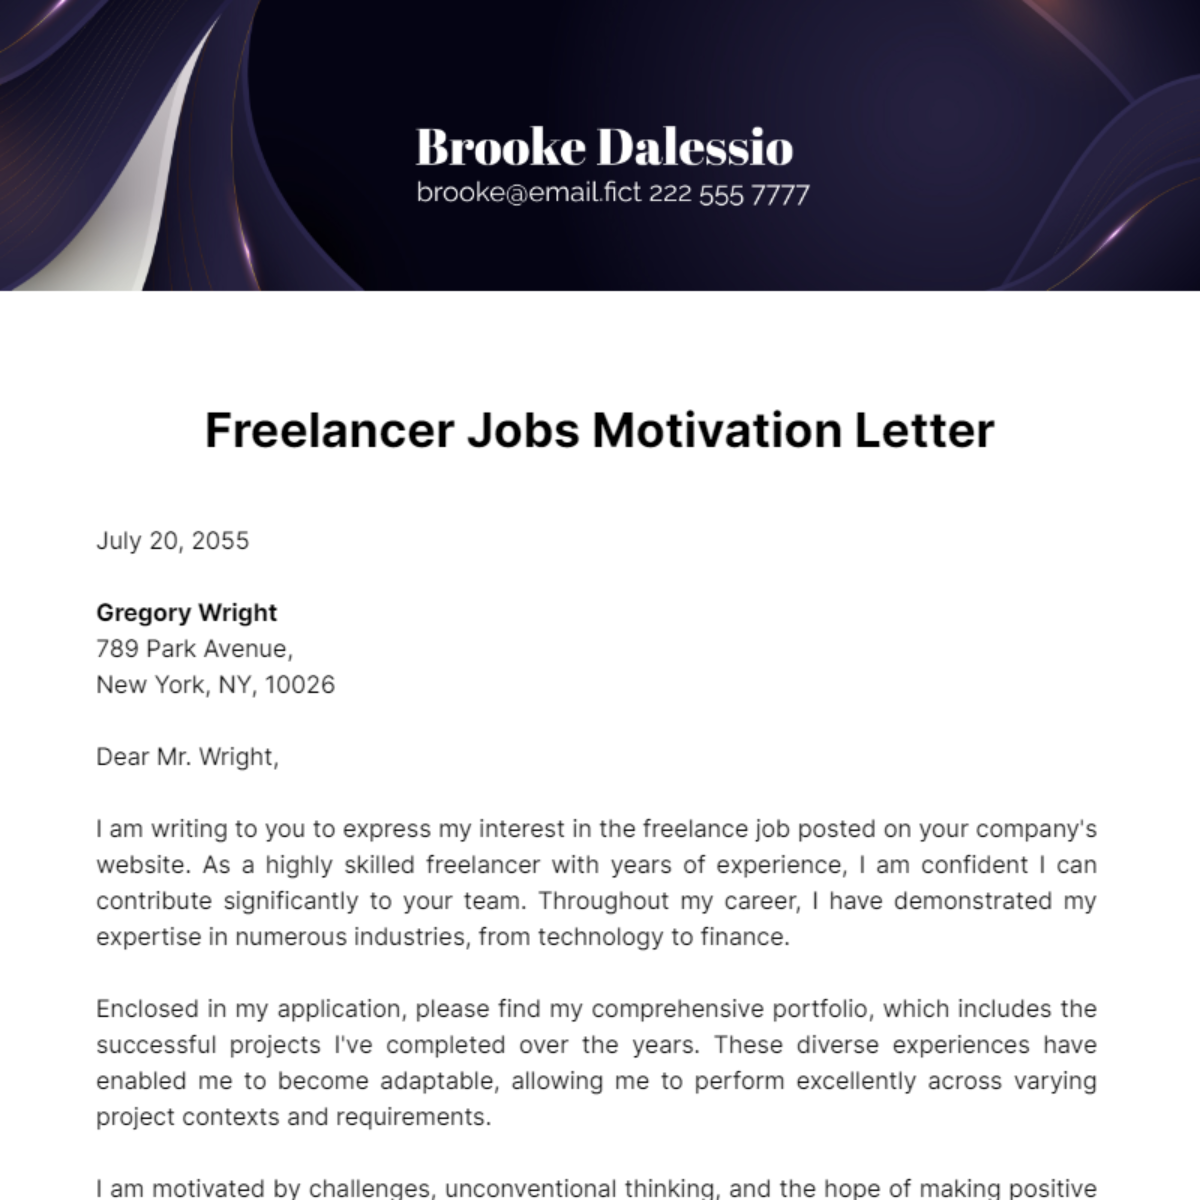 Freelancer Jobs Motivation Letter Template